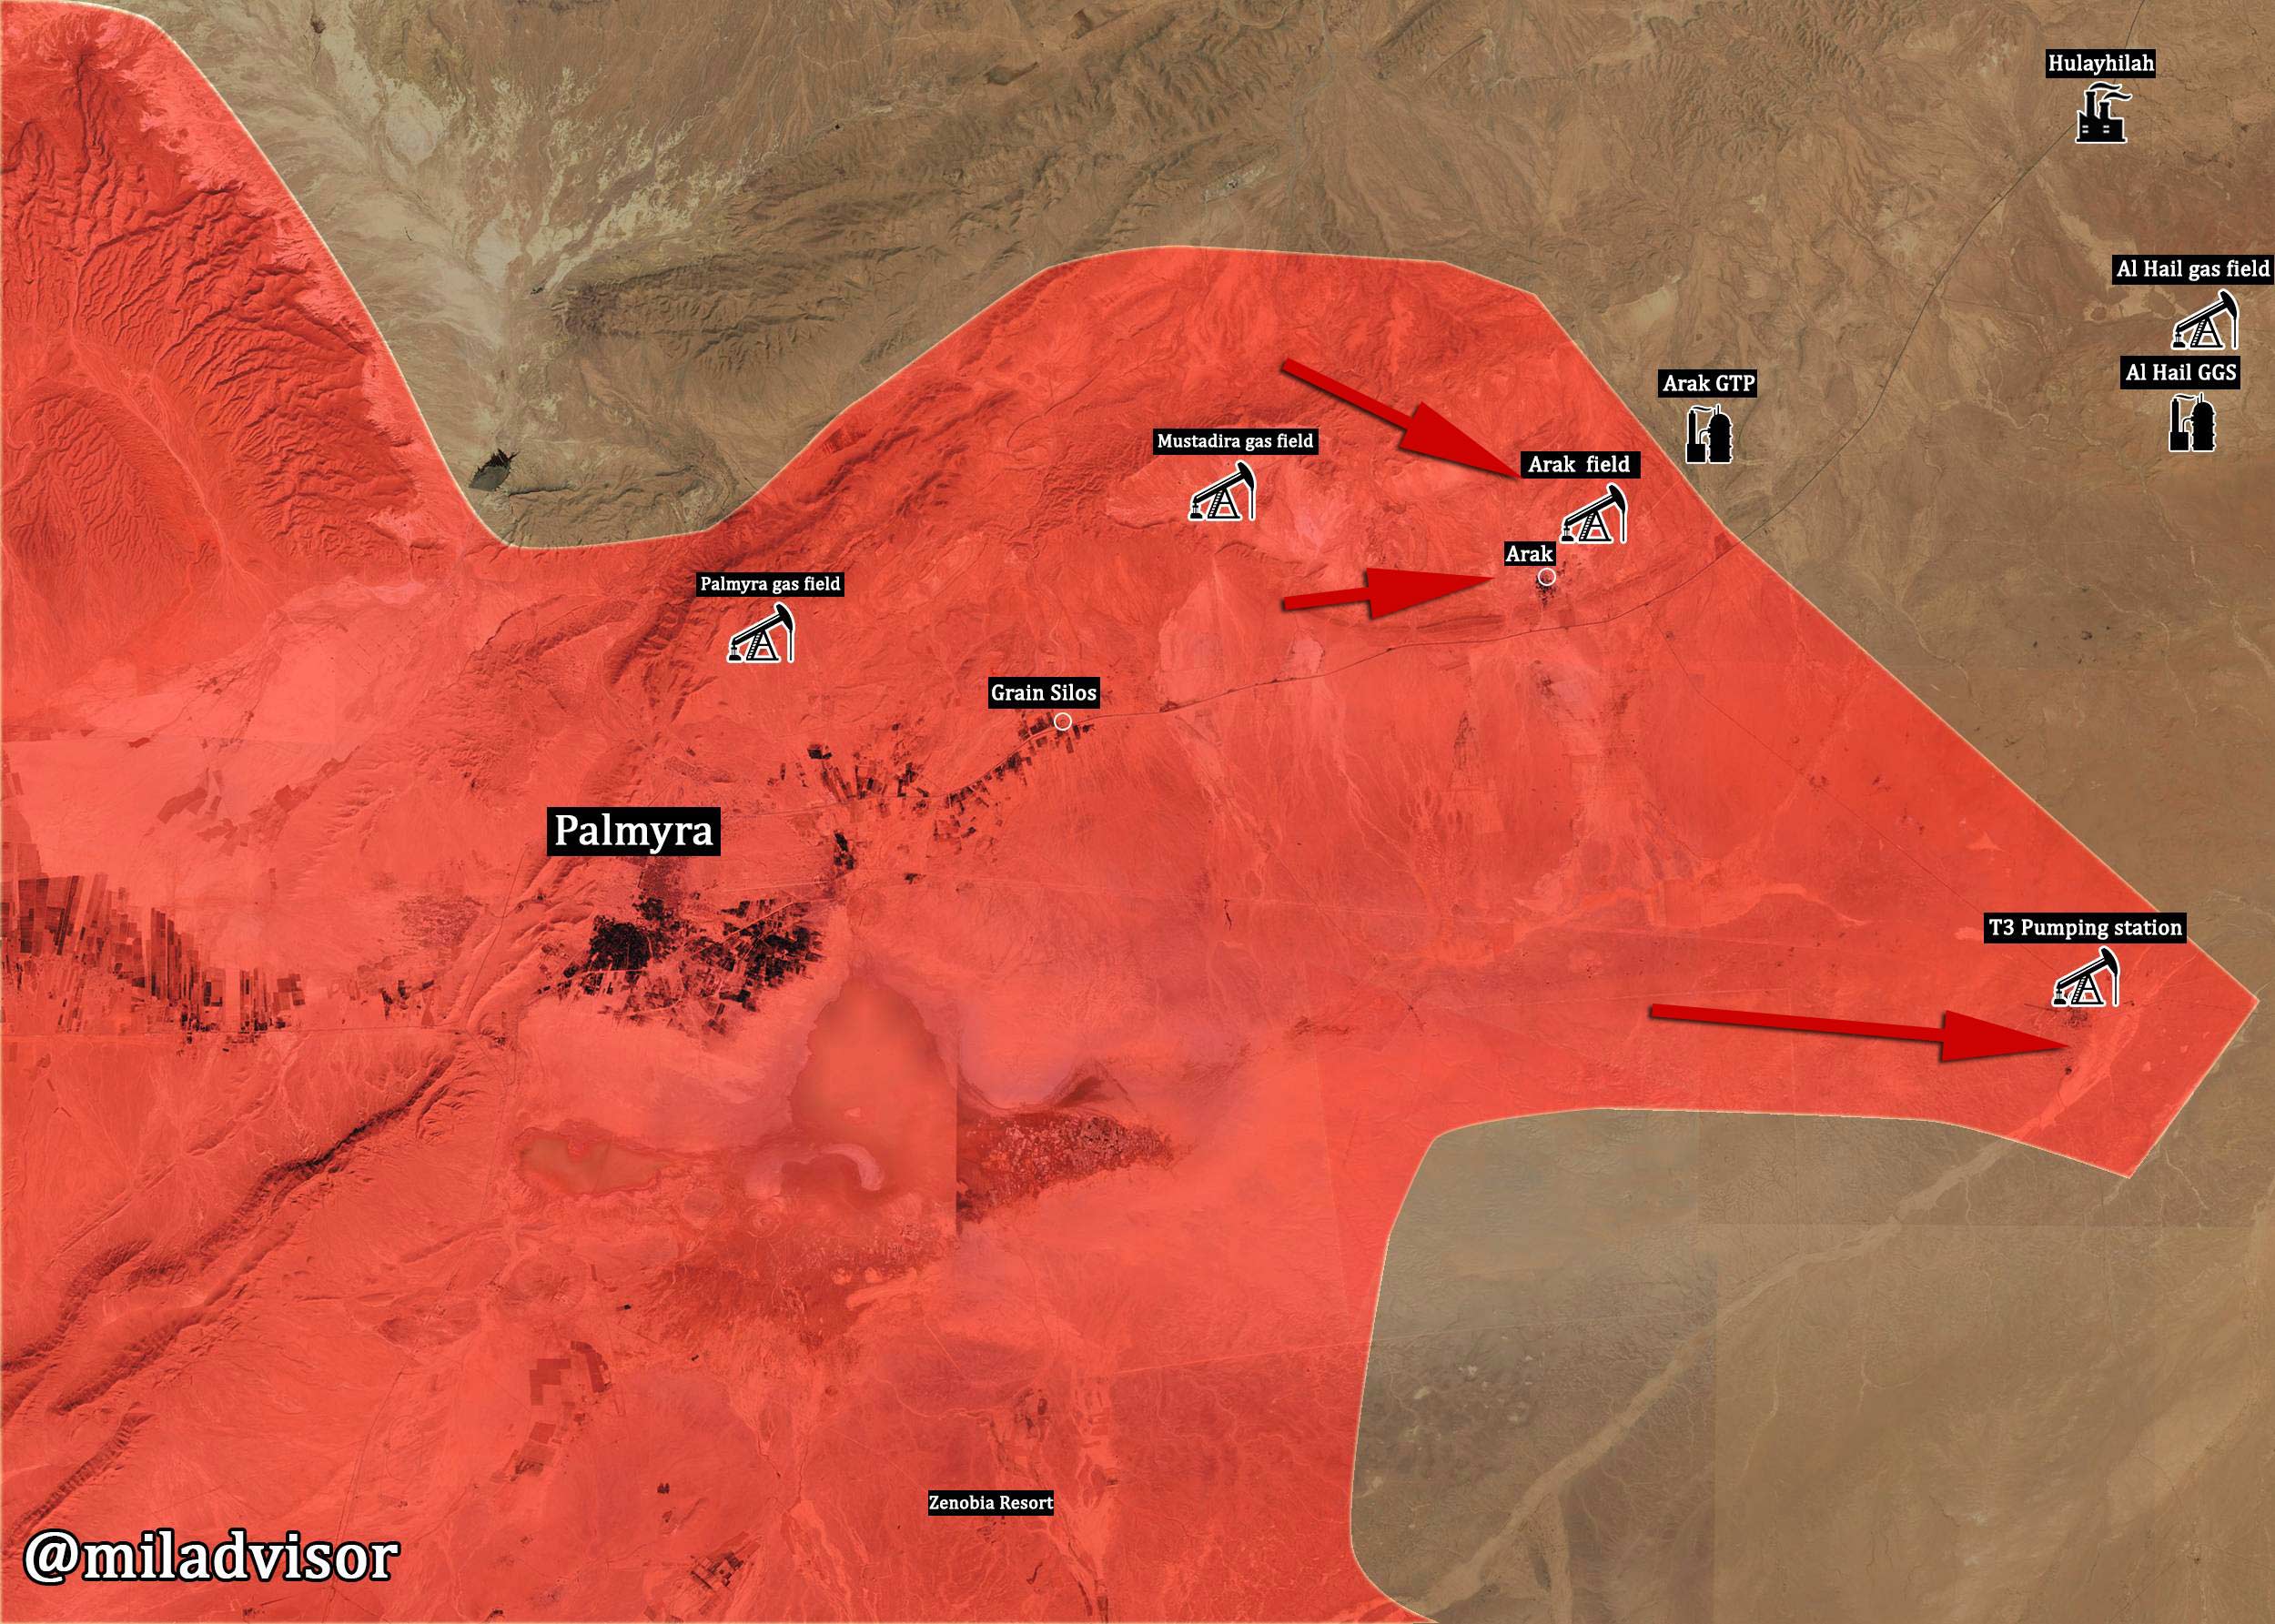 Сирийская армия взяла под контроль район Арак и нефтяную станцию Т-3